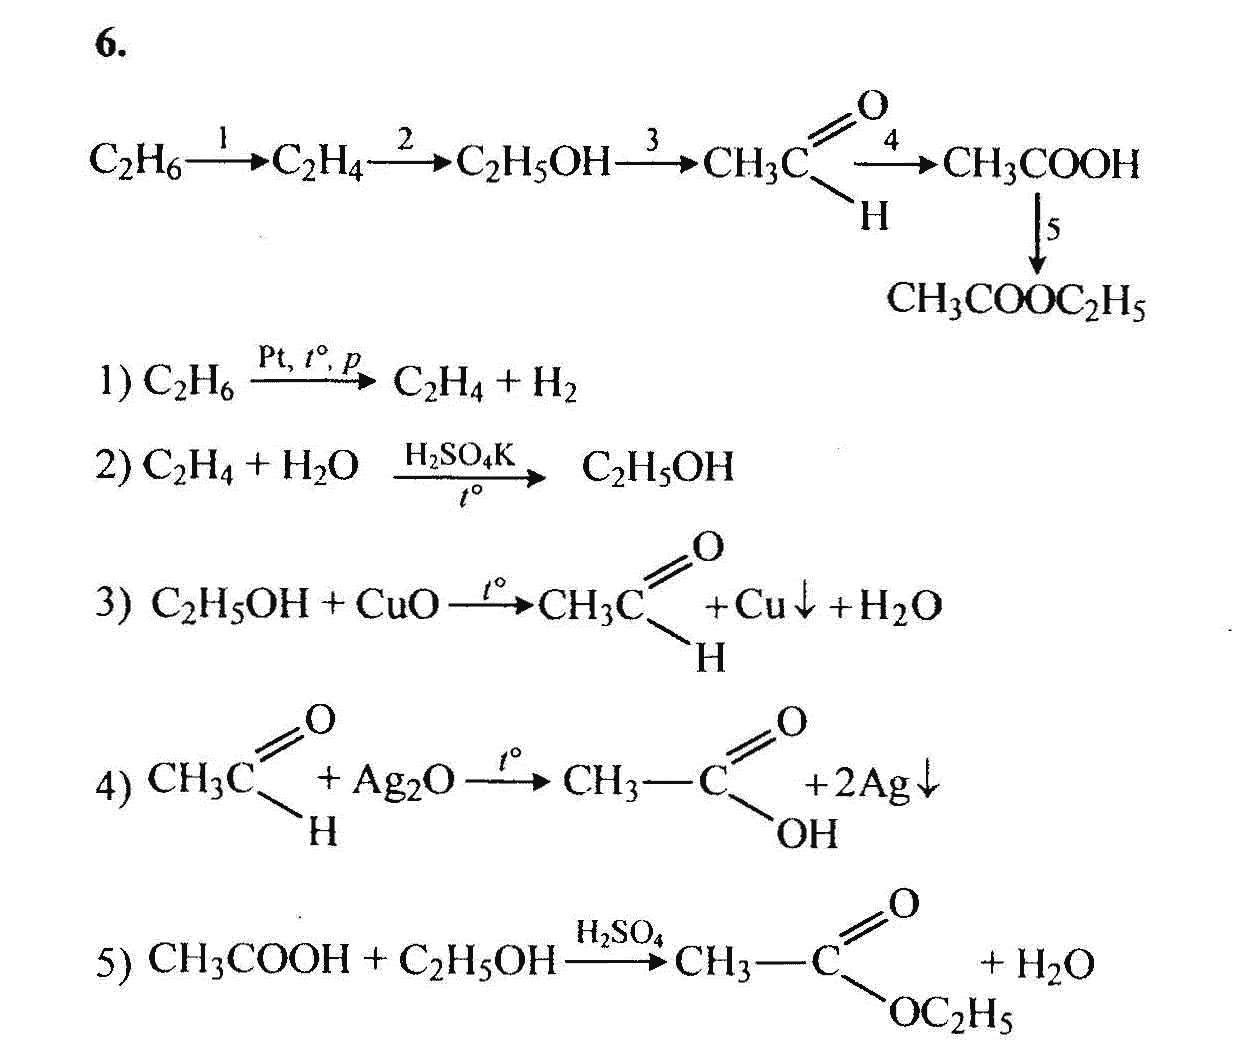 Превращение этана в этилен. Цепочки превращений по теме альдегиды и кетоны. Цепочки на альдегиды. Цепочки по теме альдегиды и кетоны.